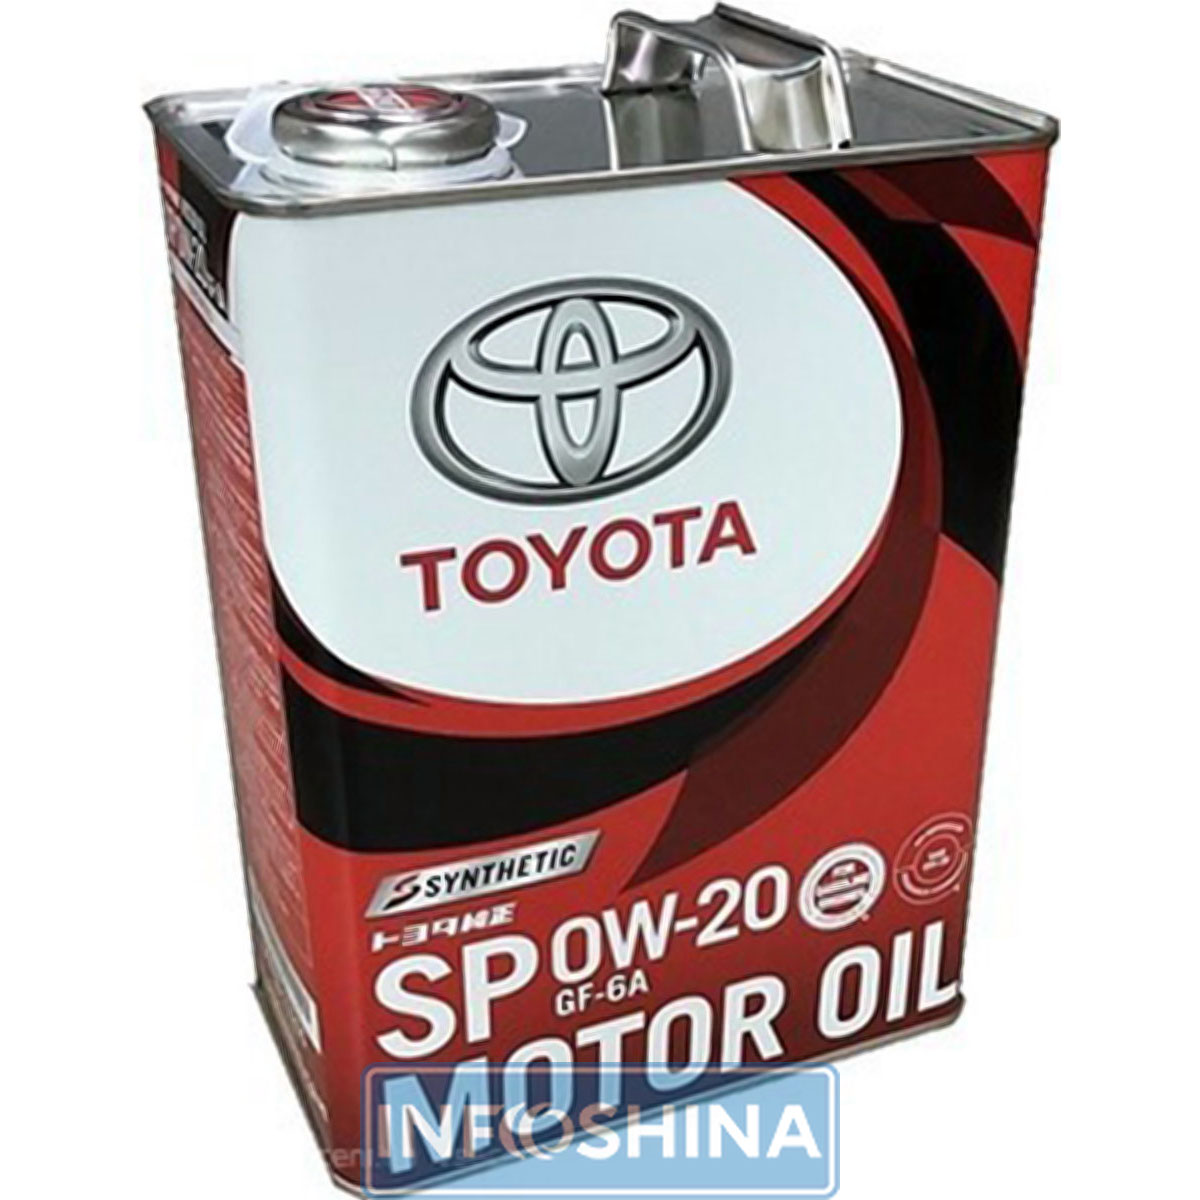 Купить масло Toyota Synthetic Motor Oil 0W-20 SP/GF-6A (1л)